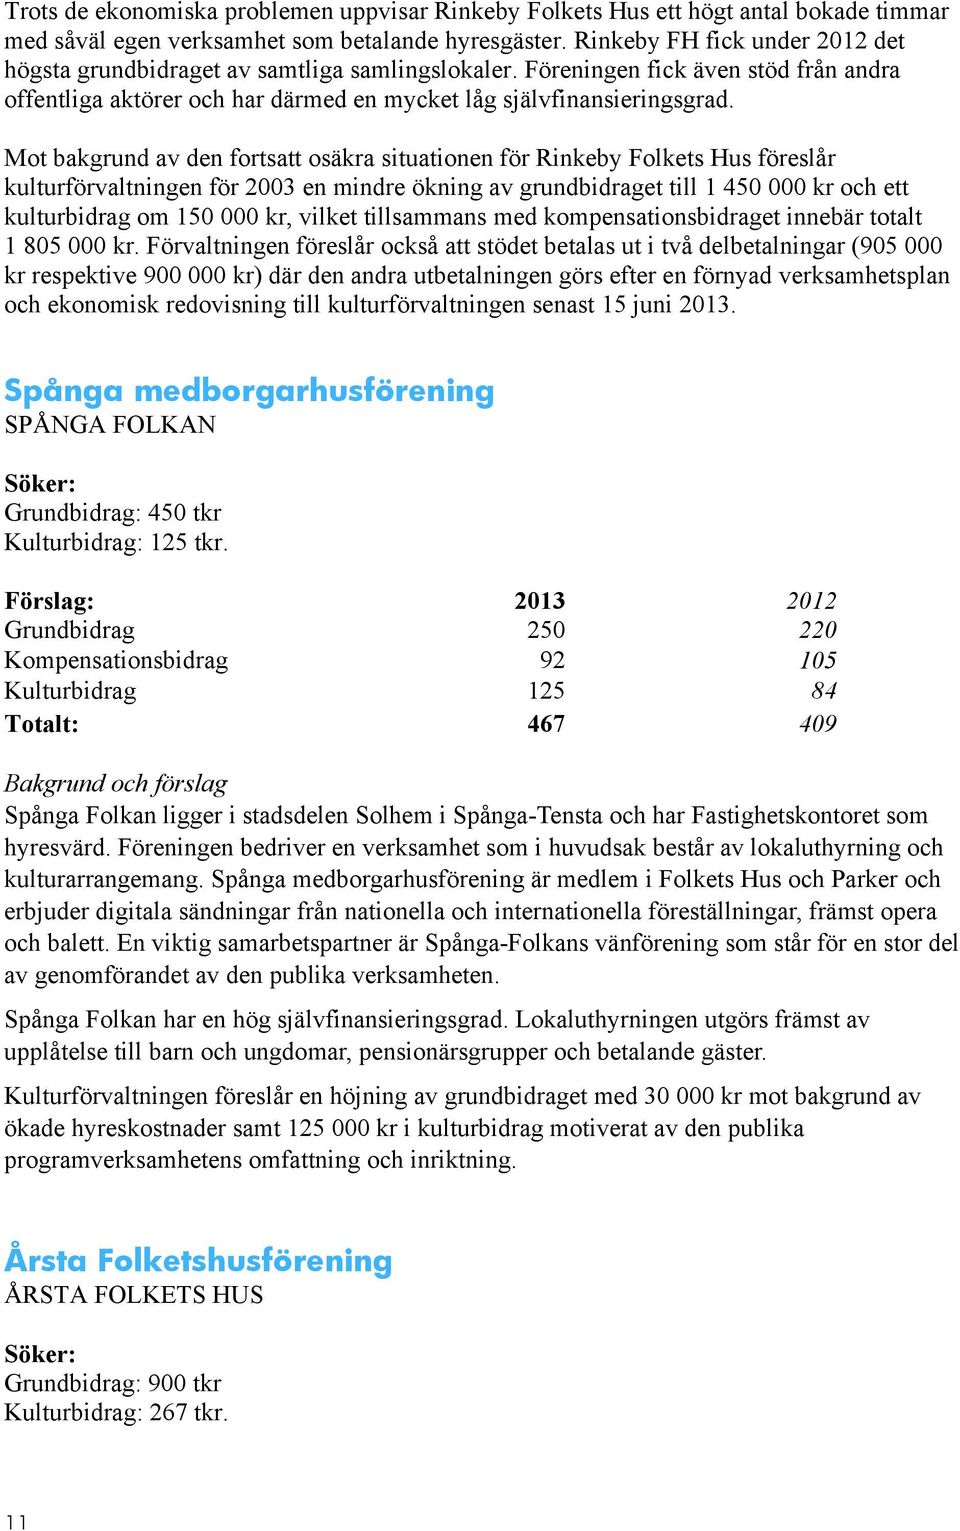 Mot bakgrund av den fortsatt osäkra situationen för Rinkeby Folkets Hus föreslår kulturförvaltningen för 2003 en mindre ökning av grundbidraget till 1 450 000 kr och ett kulturbidrag om 150 000 kr,